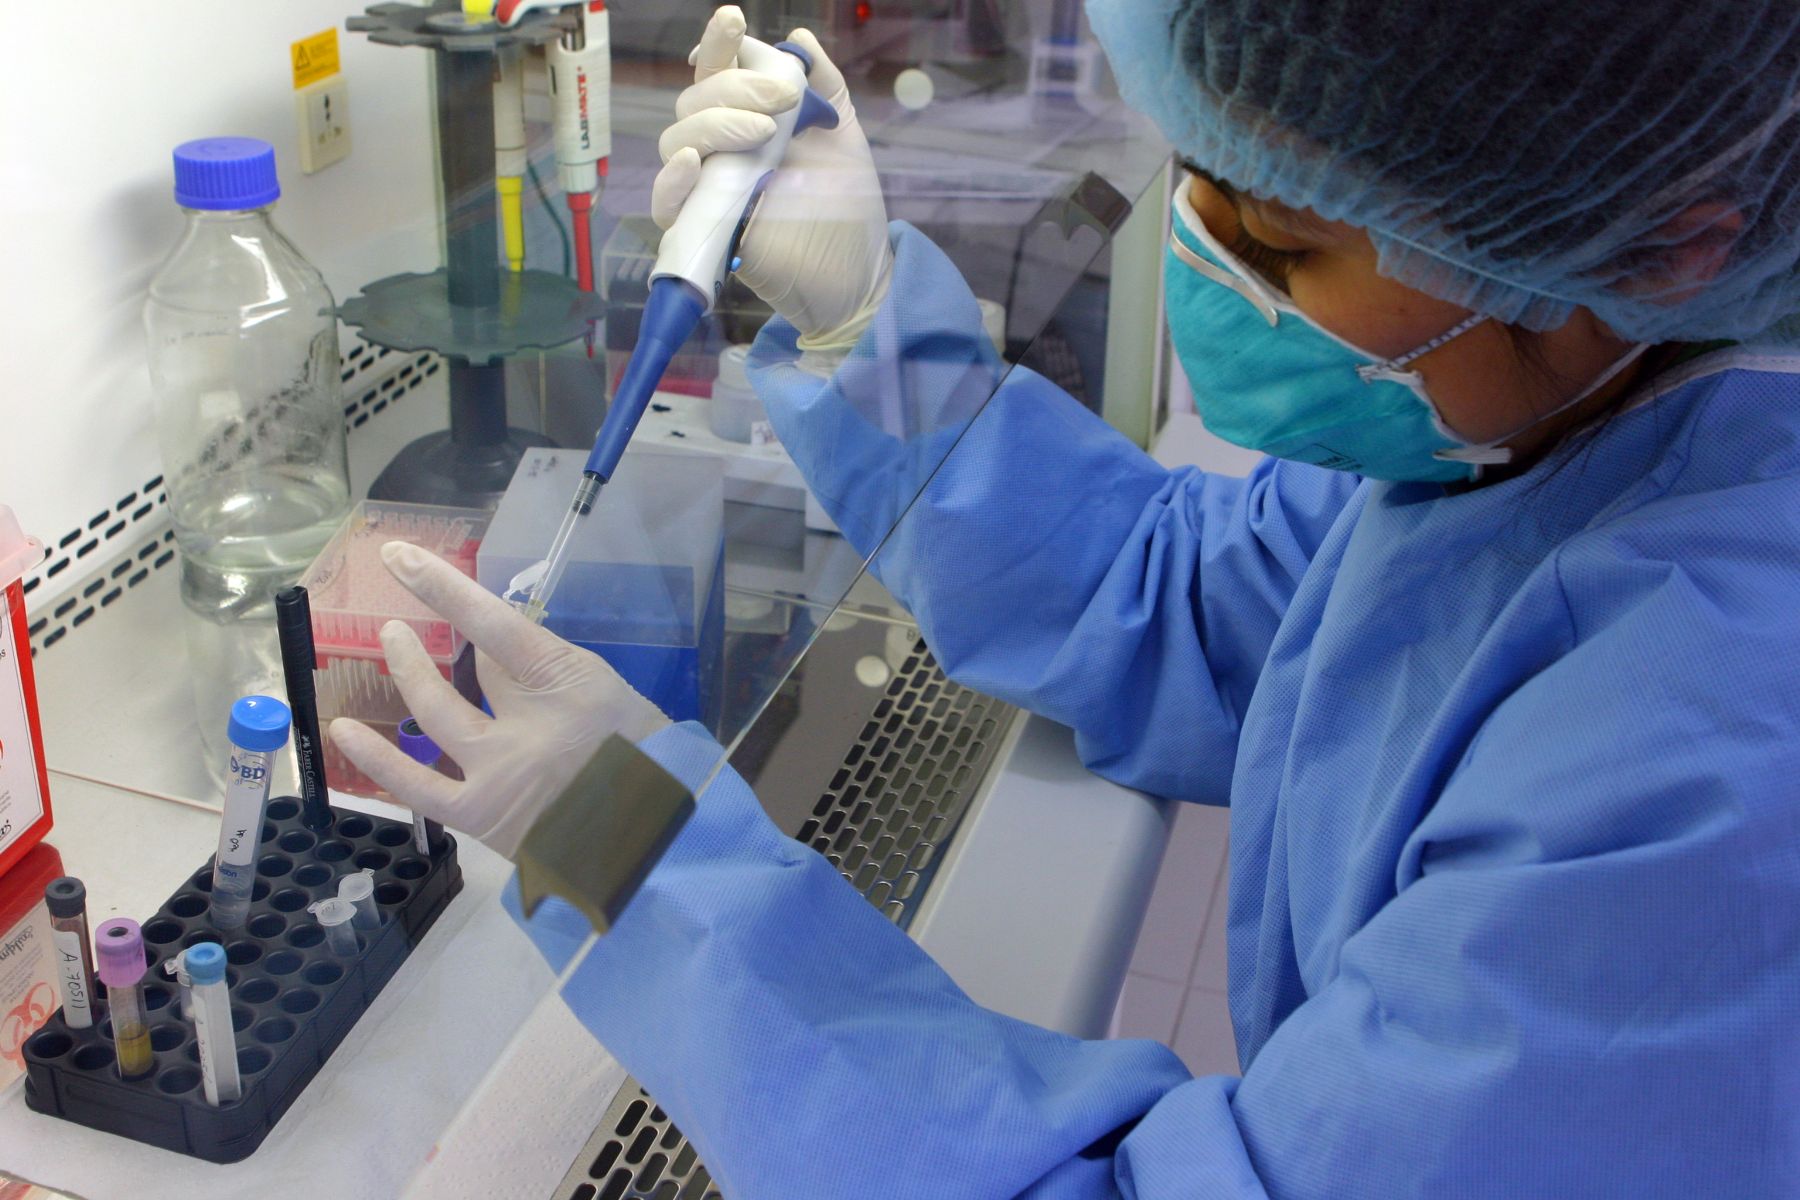 Fertilización in vitro es el método, uno de los métodos más comunes para concebir. Foto: Andina/archivo